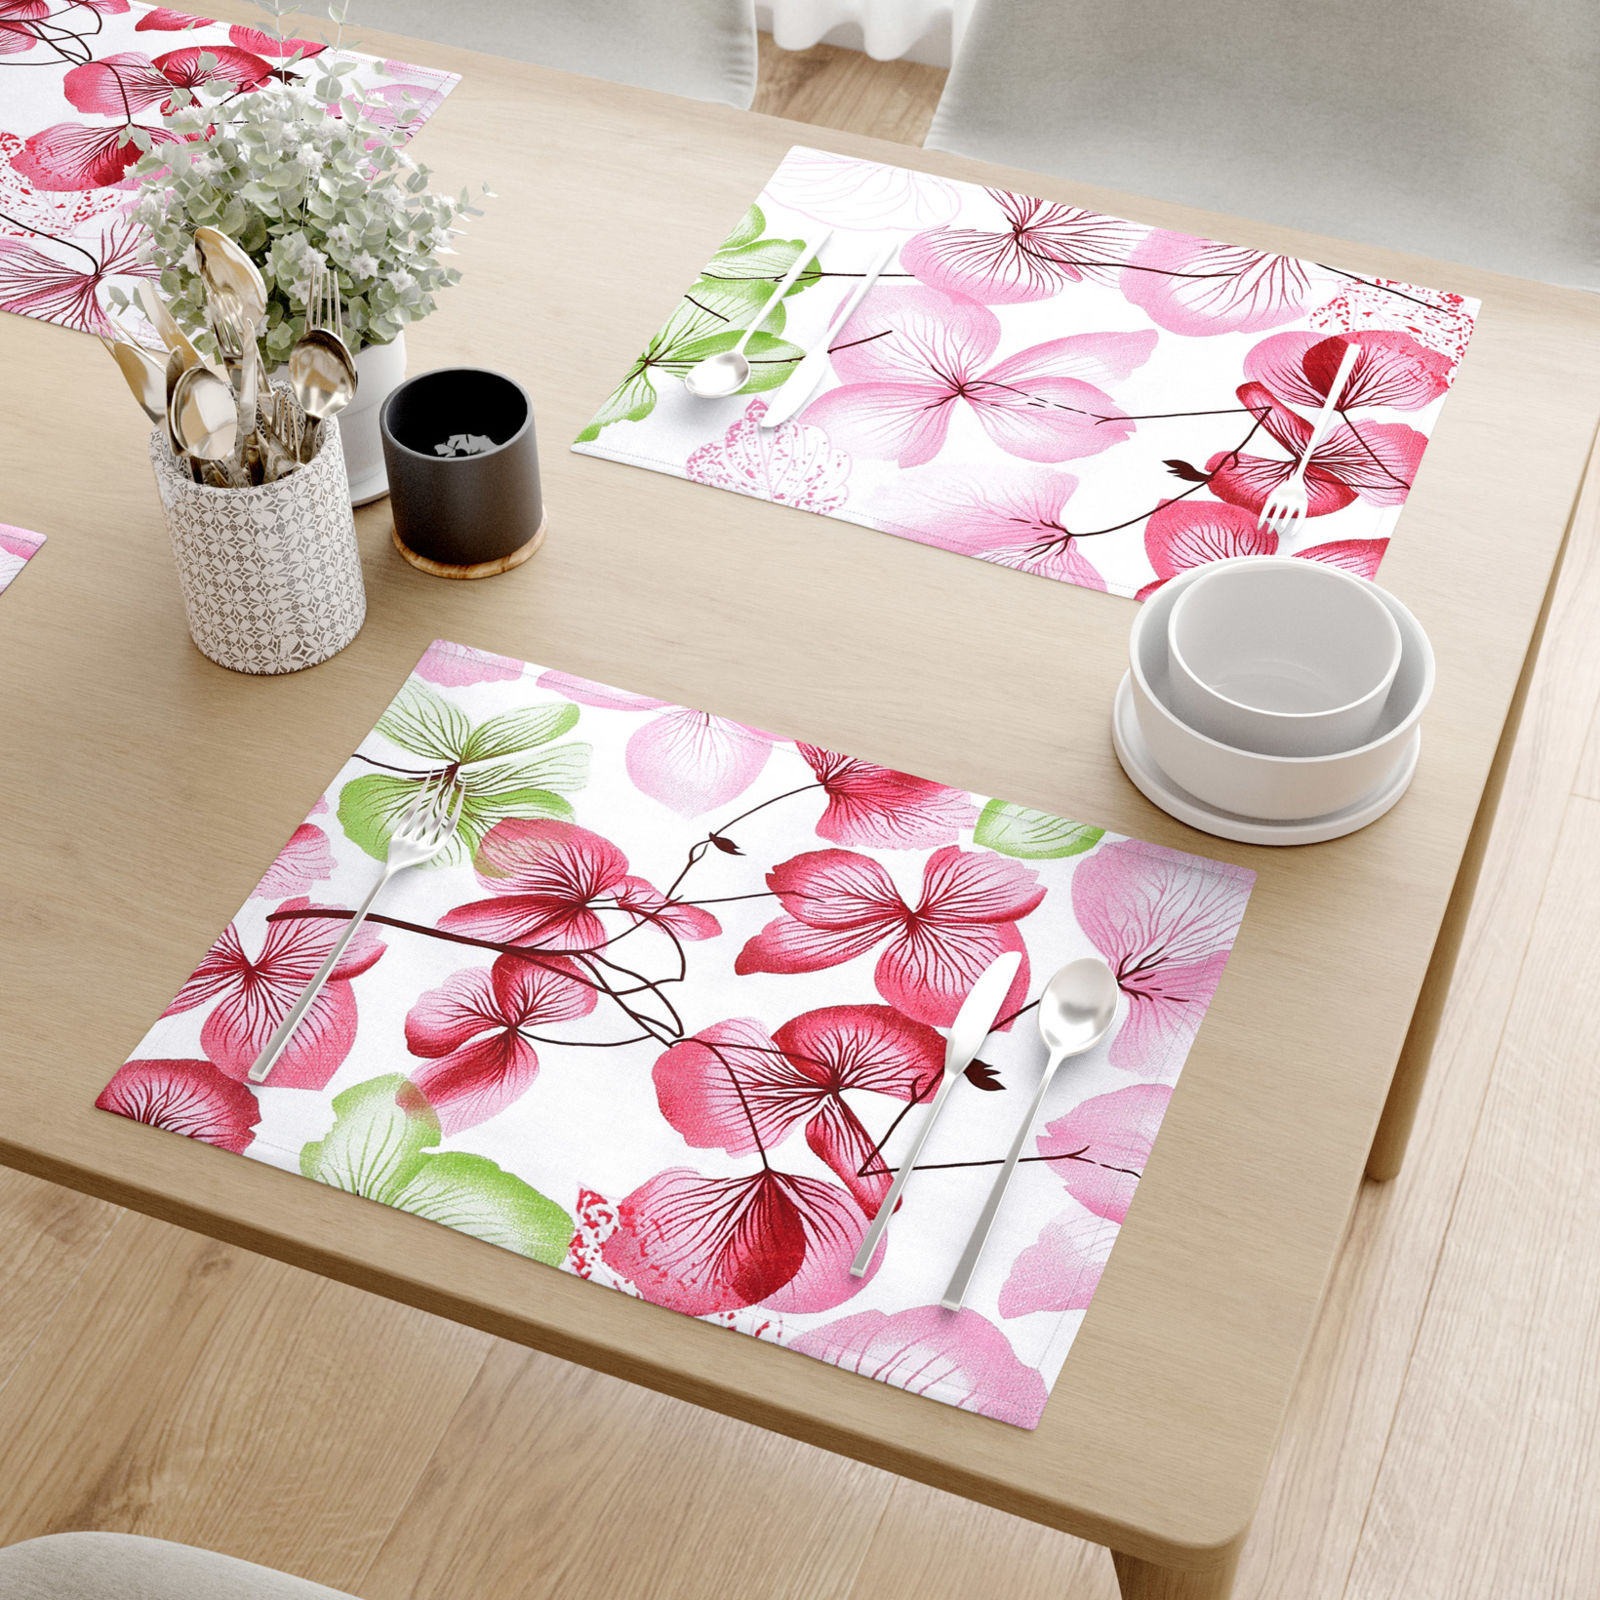 Podkładka na stół z płótna bawełnianego - różowe i zielone kwiaty z liśćmi - 2szt.